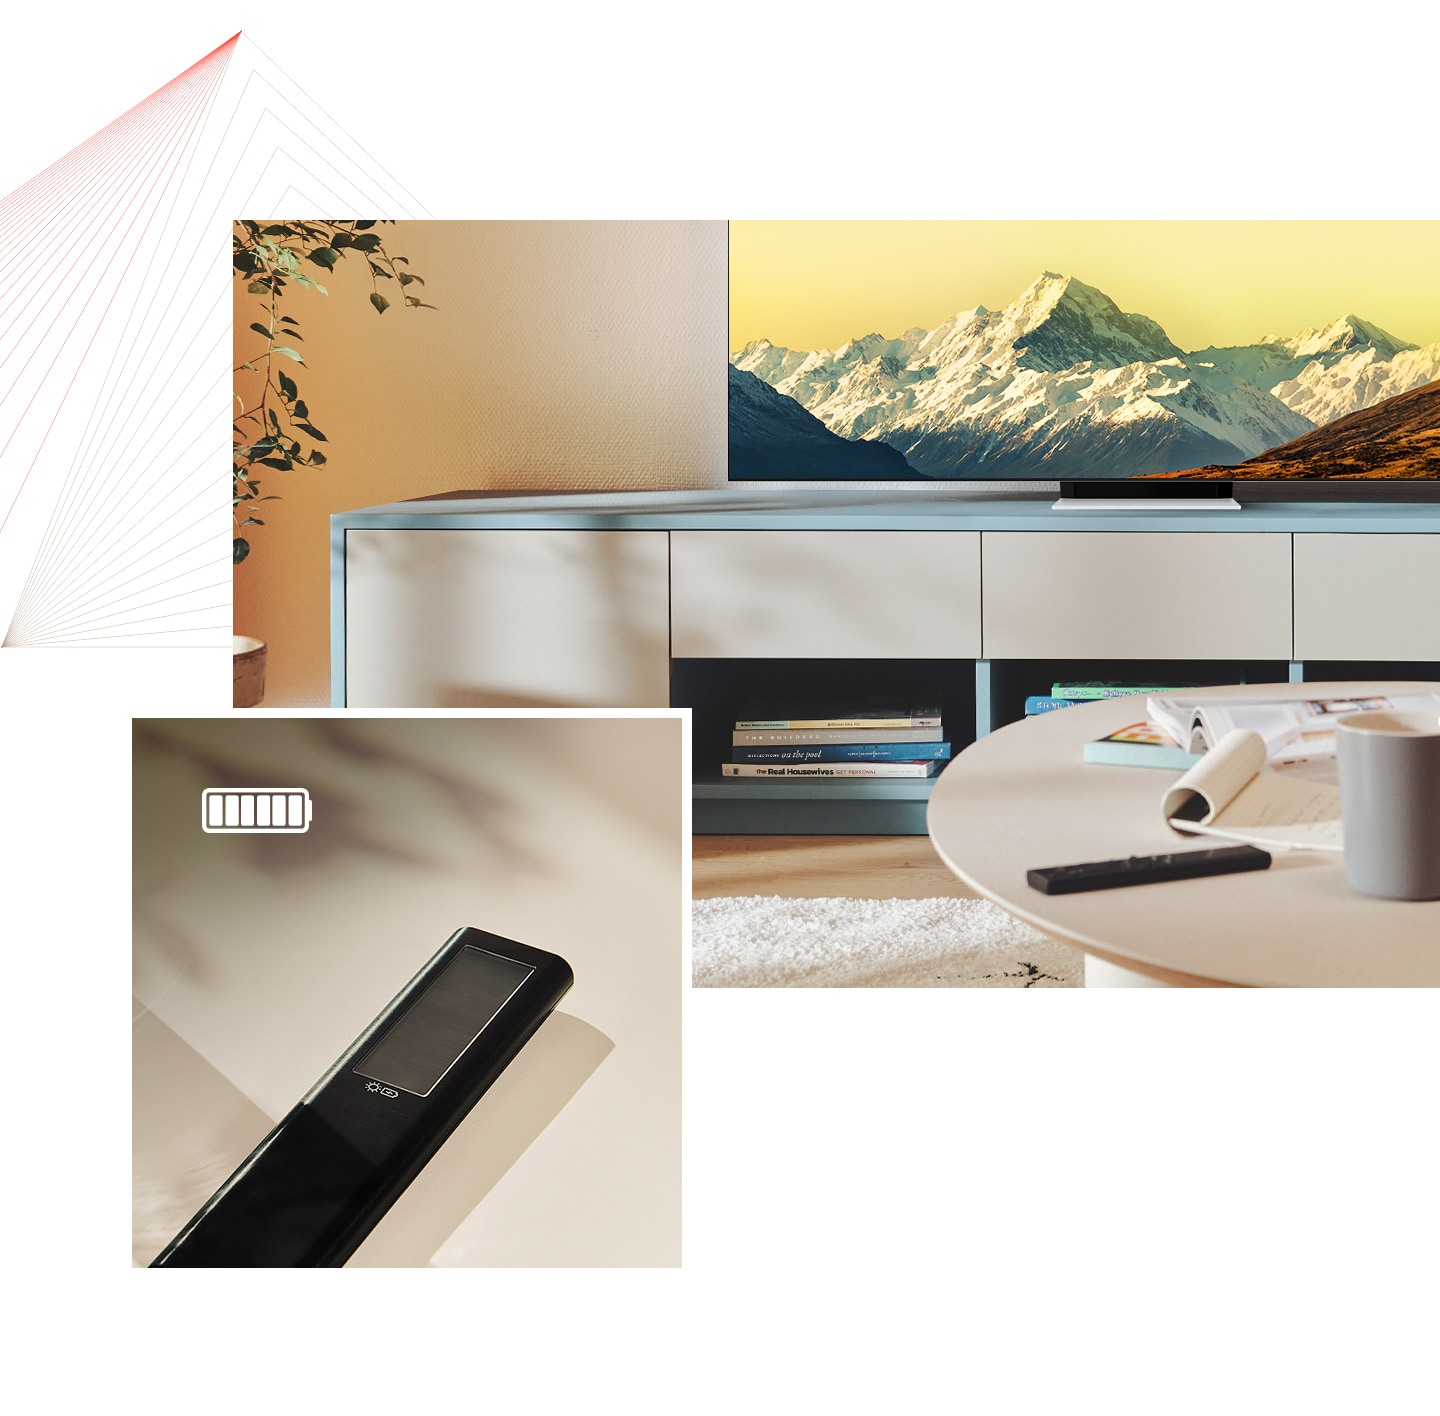 SolarCell pult on eredas toas laual, näha on ka Neo QLED. Seejärel näidatakse SolarCell puldi lähivaadet, näha on ikoon, mis on märk täis laaditud akust.